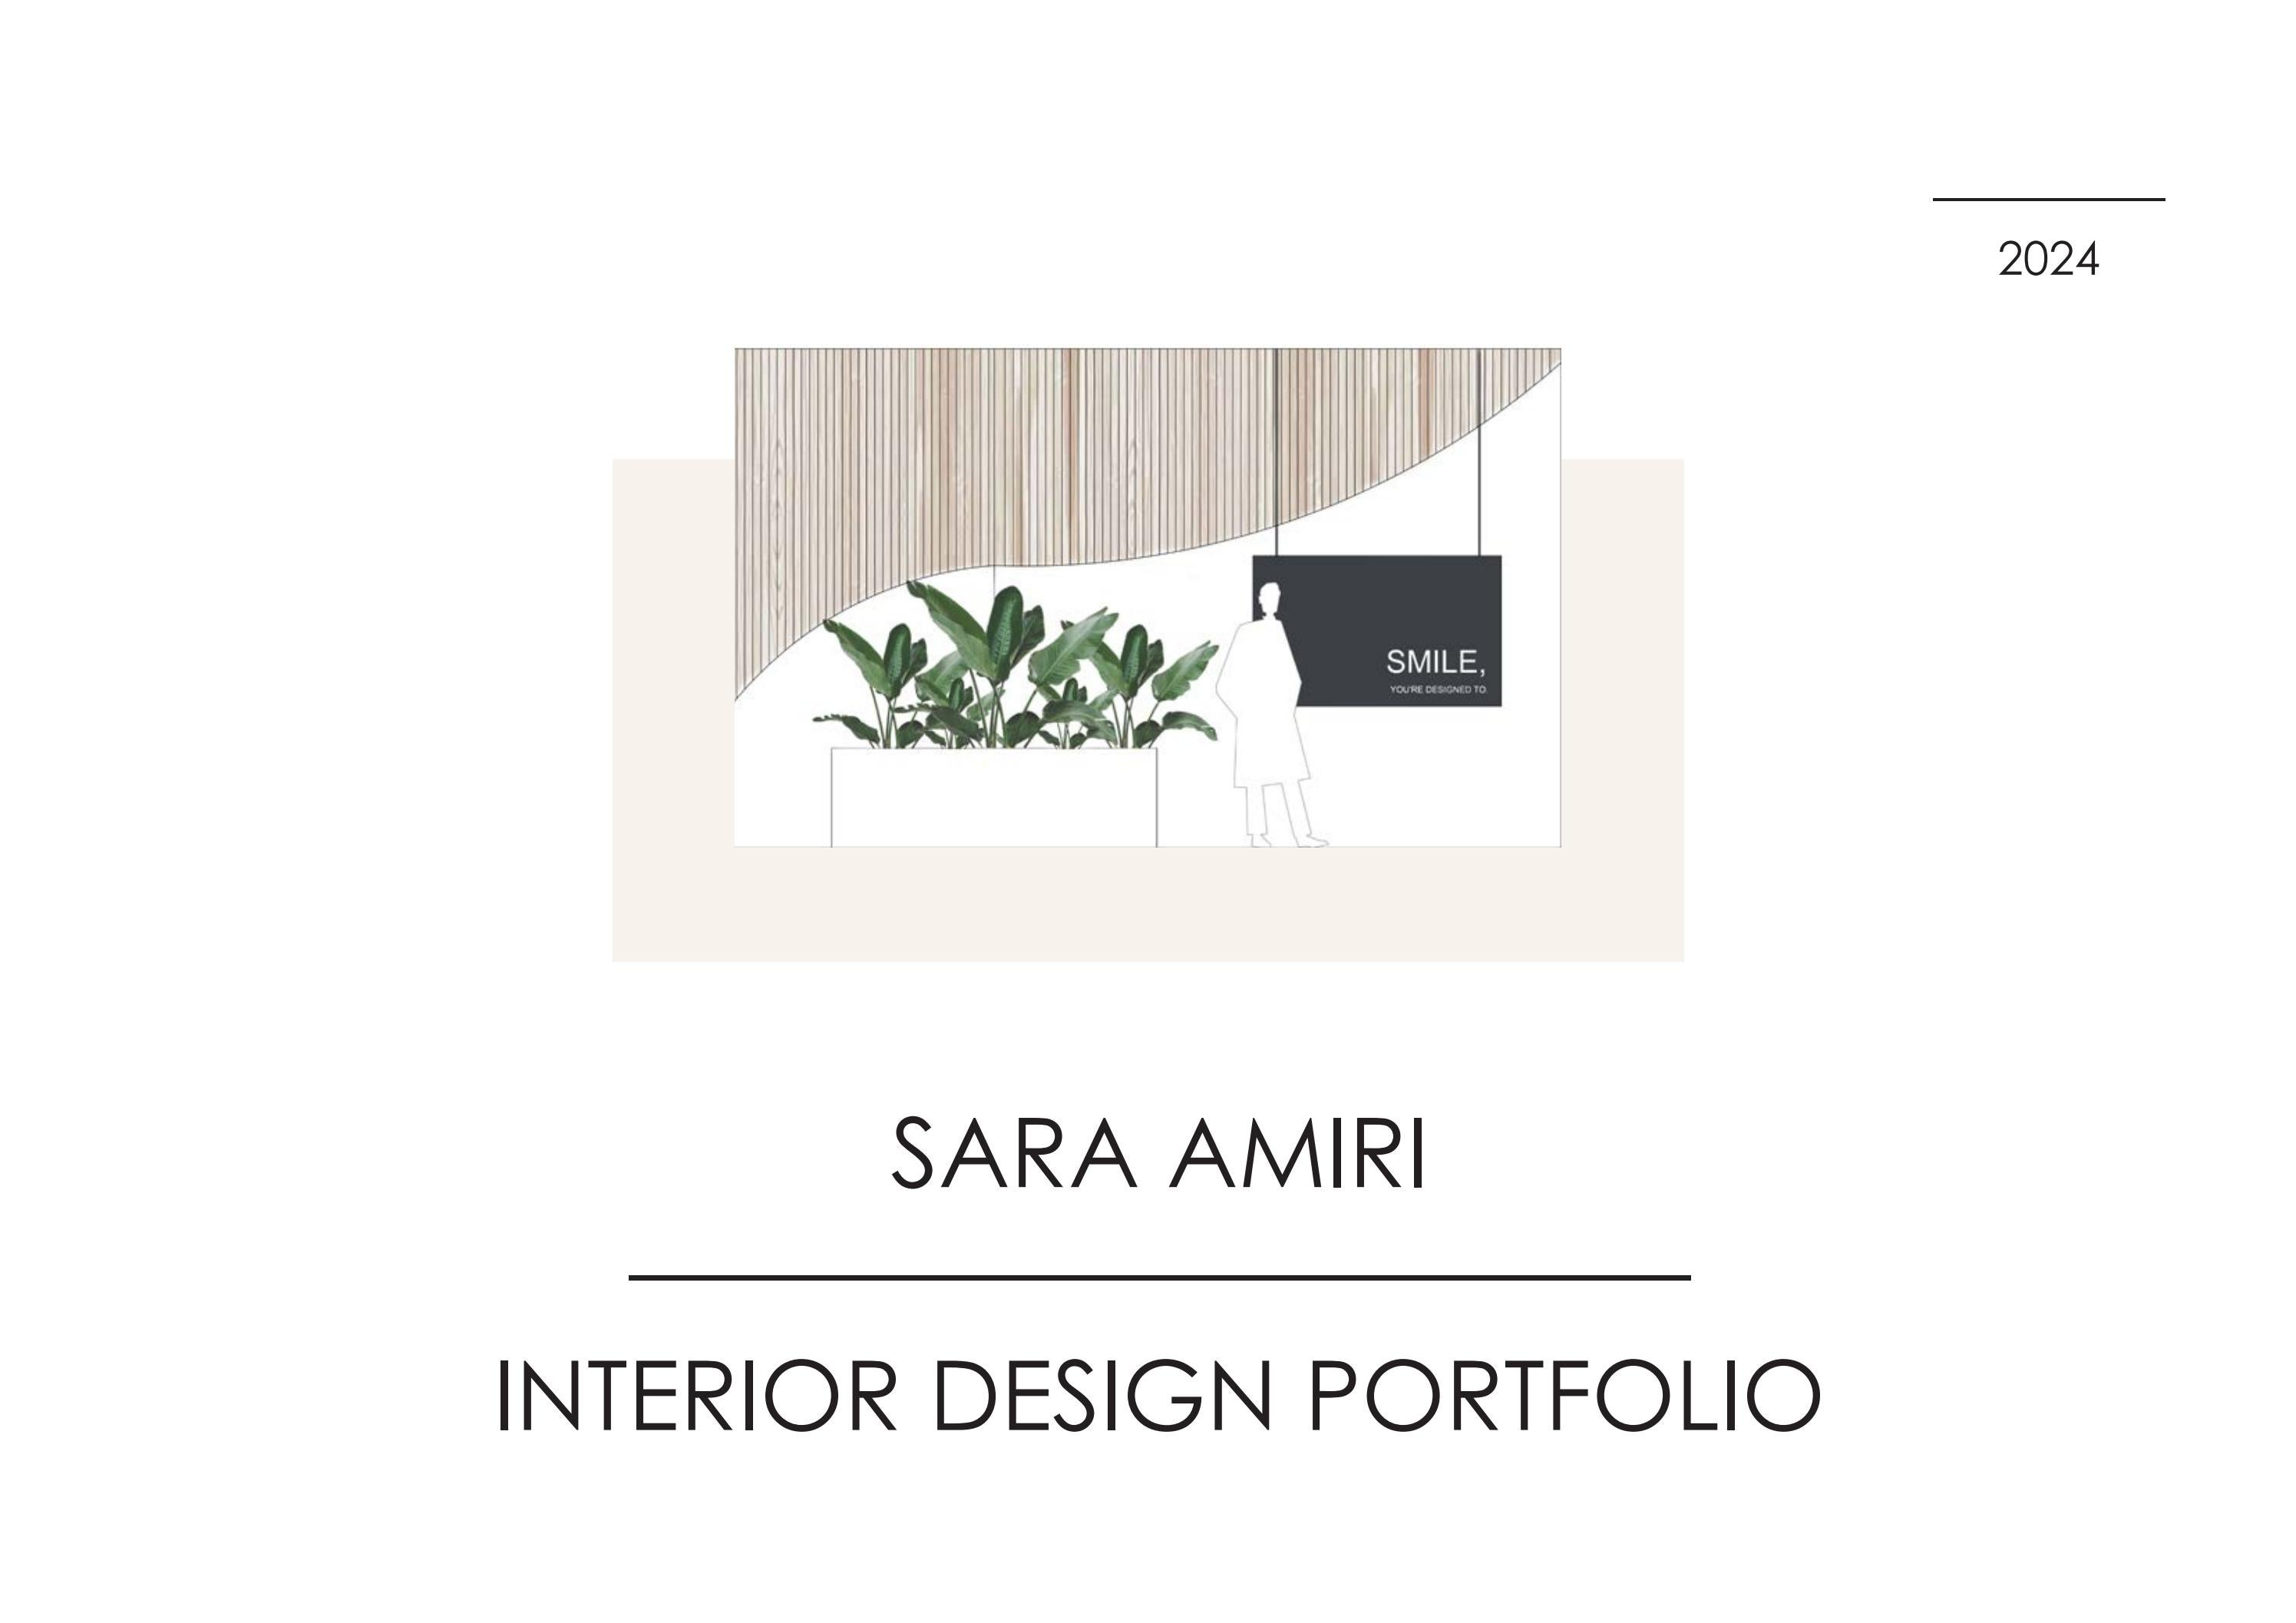 | ny

          

i i

SARA AMIR]

INTERIOR DESIGN PORTFOLIO